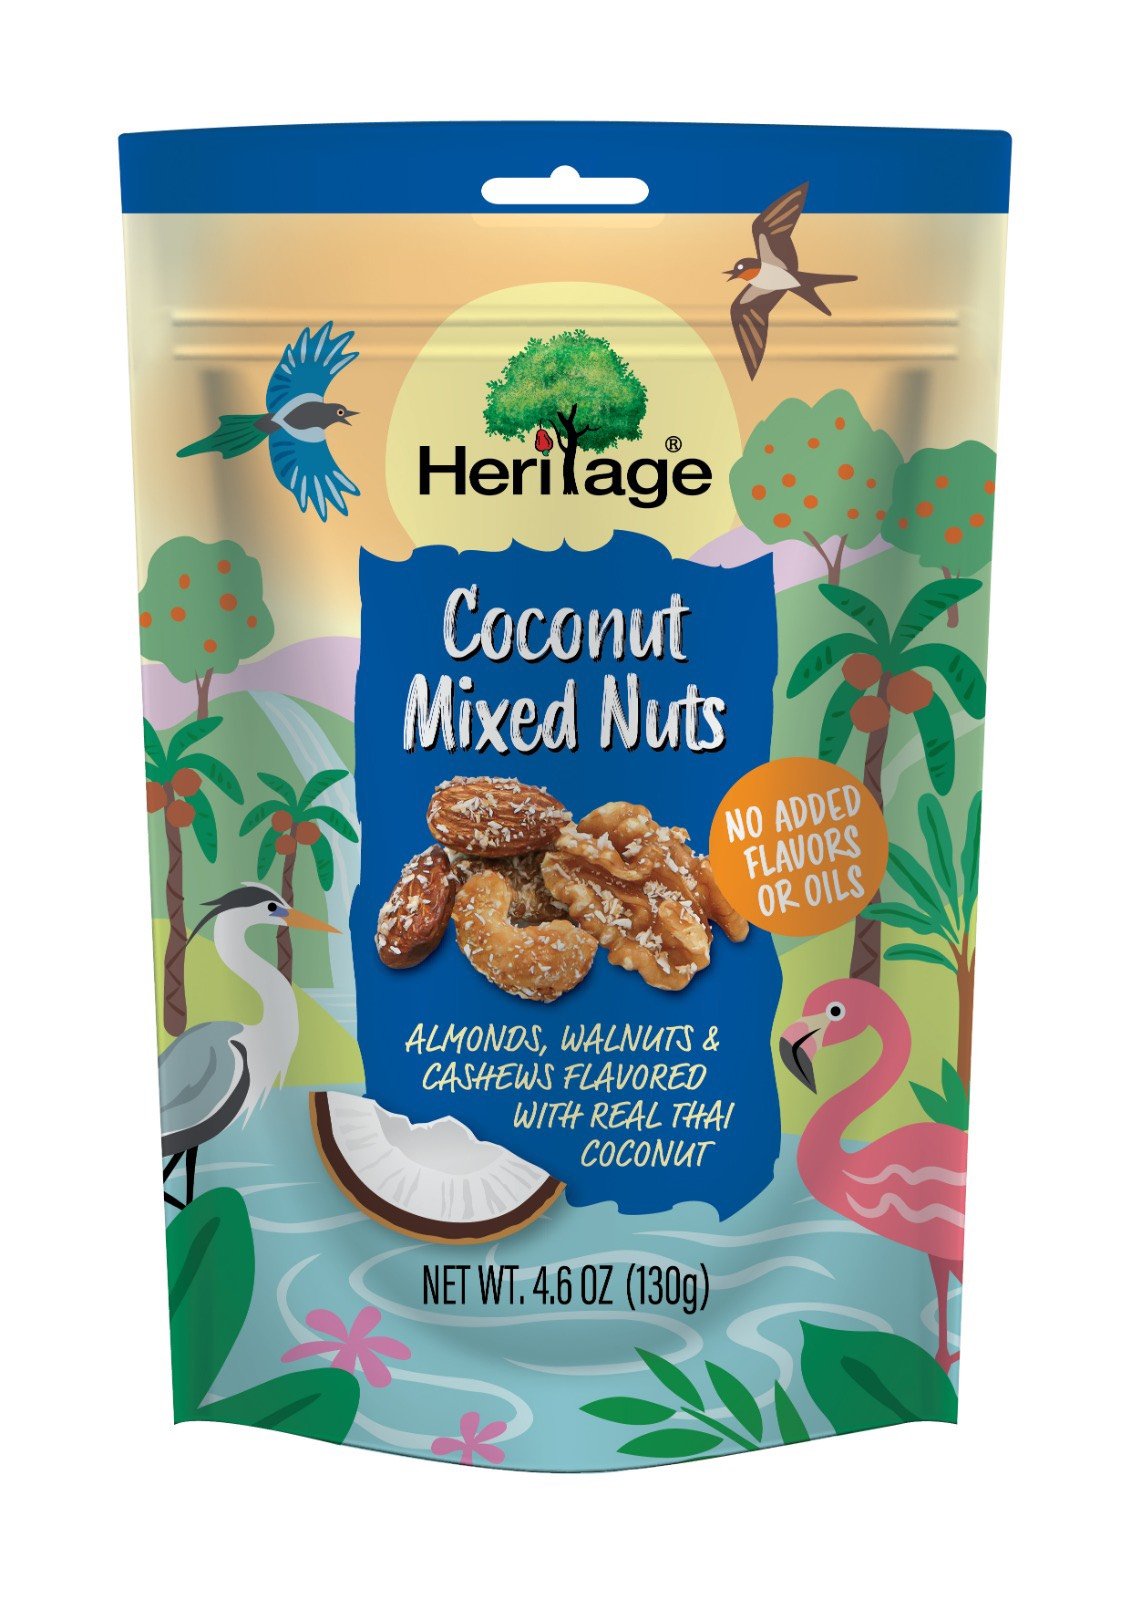 Hạt Hỗn Hợp : Hạnh Nhân, Hạt Điều , Óc Chó tẩm nước cốt dừa HERITAGE- Coconut Mixed Nuts